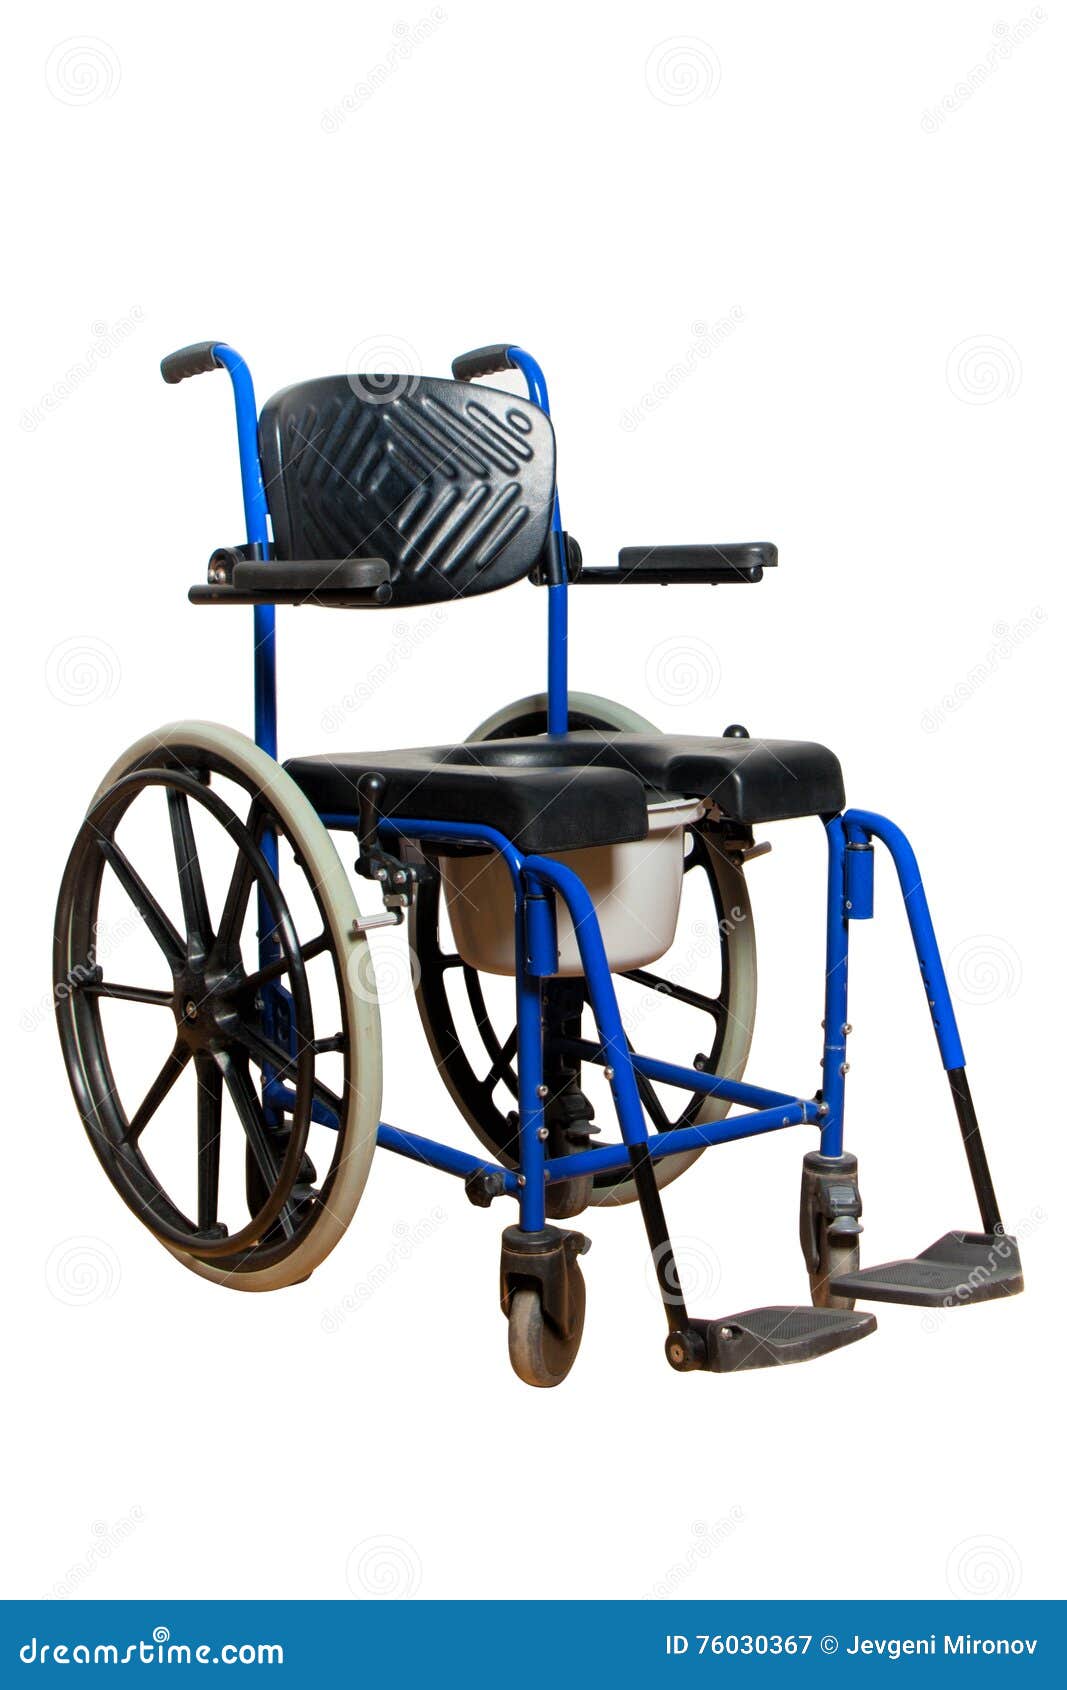 impression temporary noon Komódki Krzesło Dla Starszej Osoby Wózek Inwalidzki Z Toaletowym Koszem Dla  Dla Niepełnosprawnej Osoby Obraz Stock - Obraz złożonej z medyczny, pomoc:  76030367